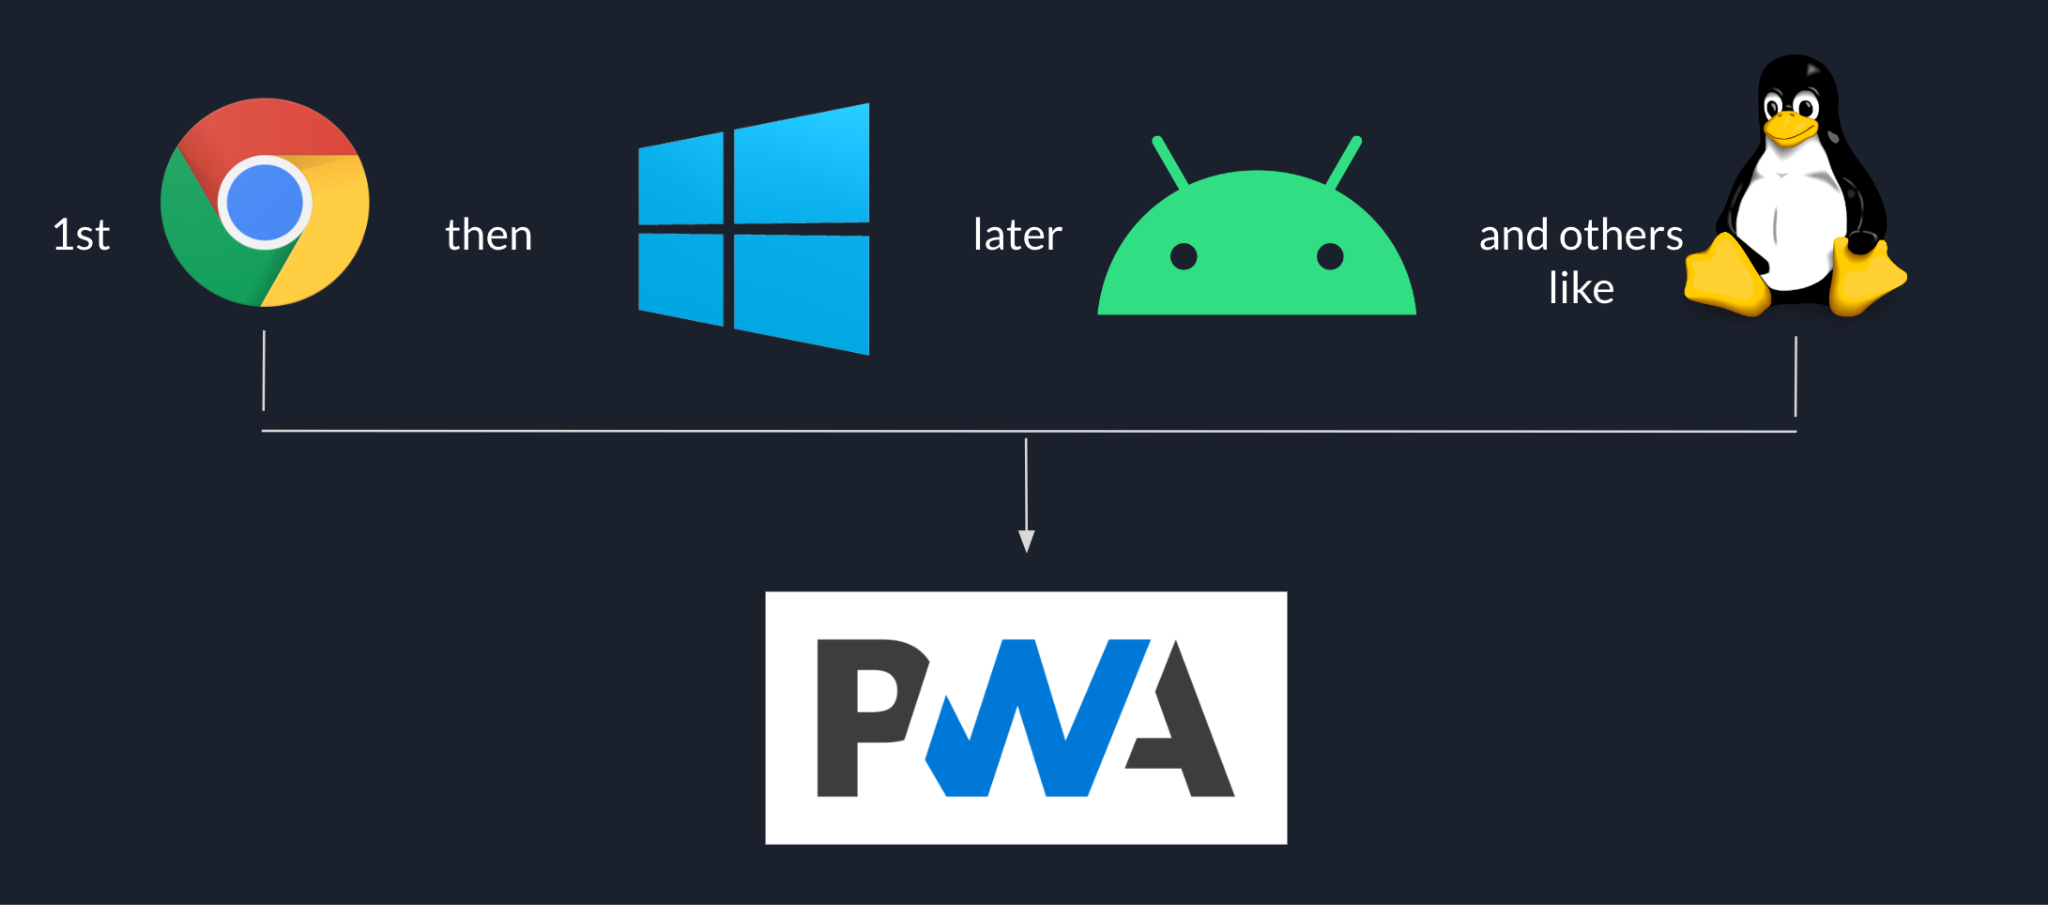 Lưu ý rằng trình tự phát hành bắt đầu từ Chrome, sau đó đến Windows, sau đó đến Android và các nền tảng khác như Linux, tất cả đều dựa trên PWA.